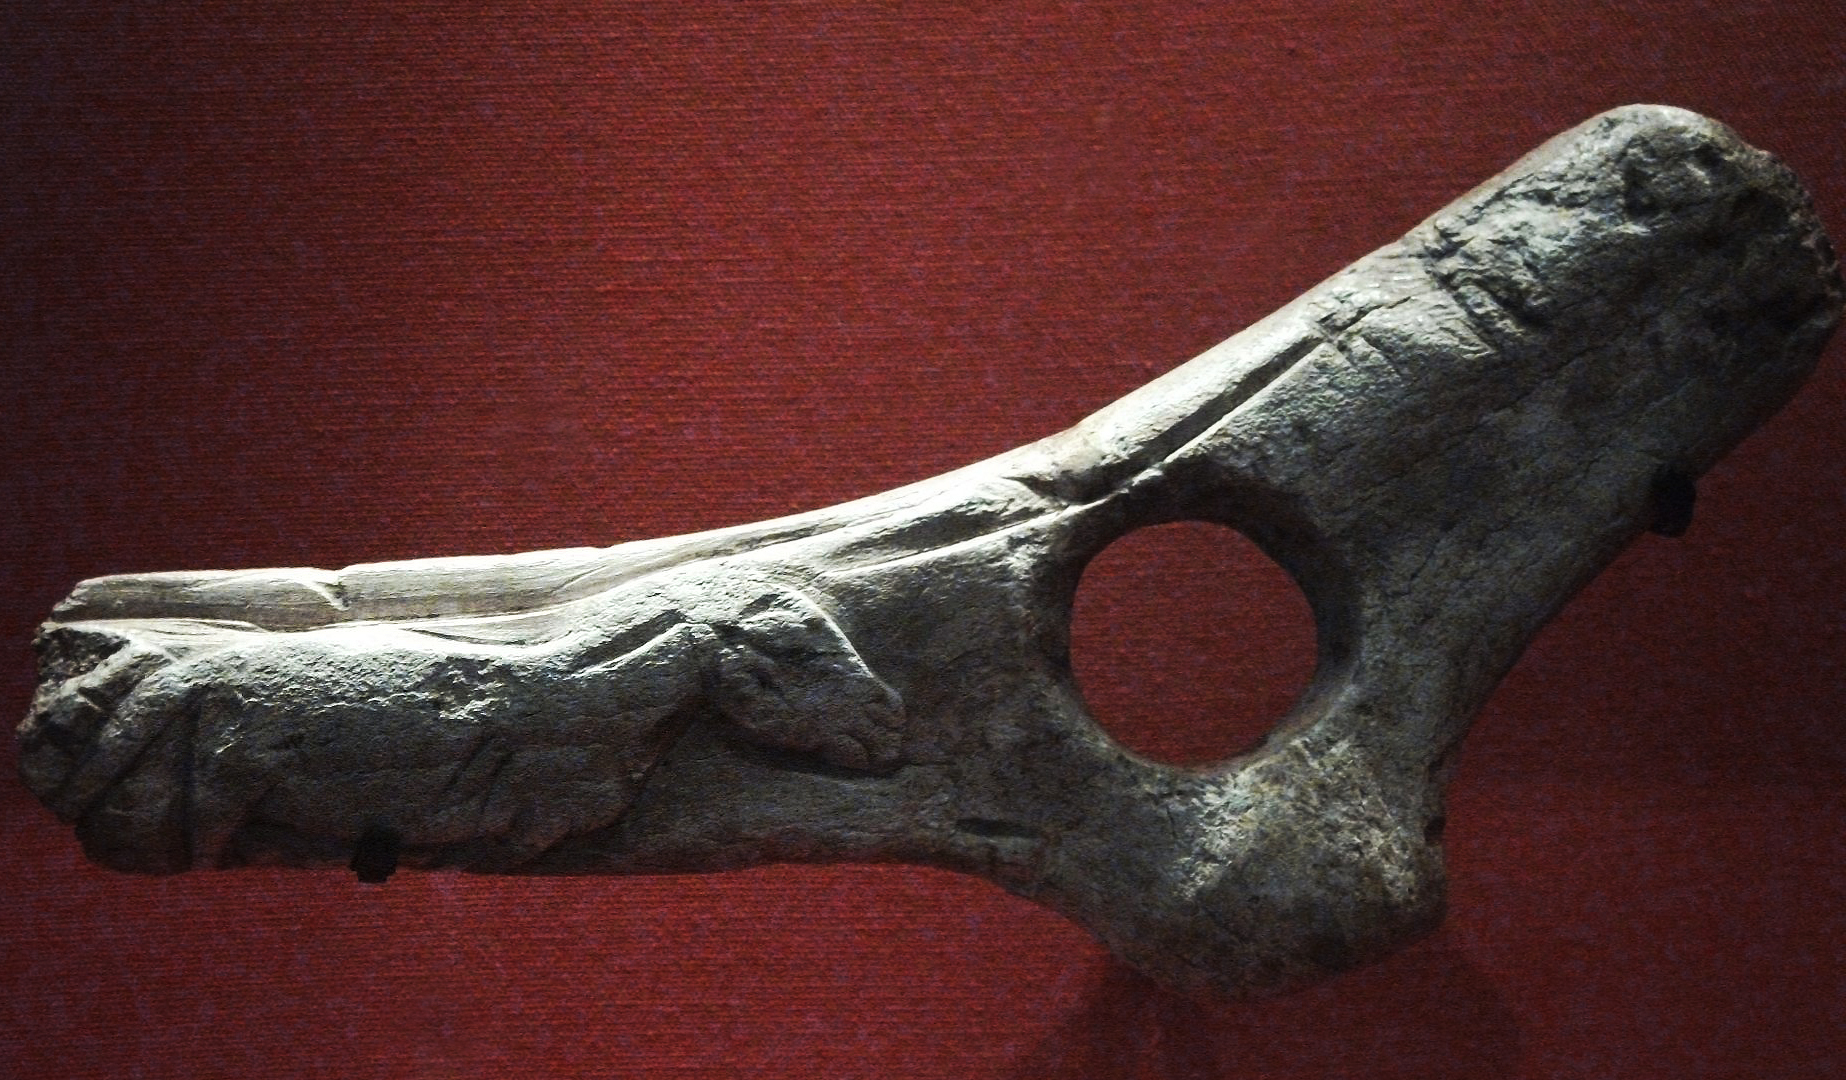 The Prehistoric Baton artefact